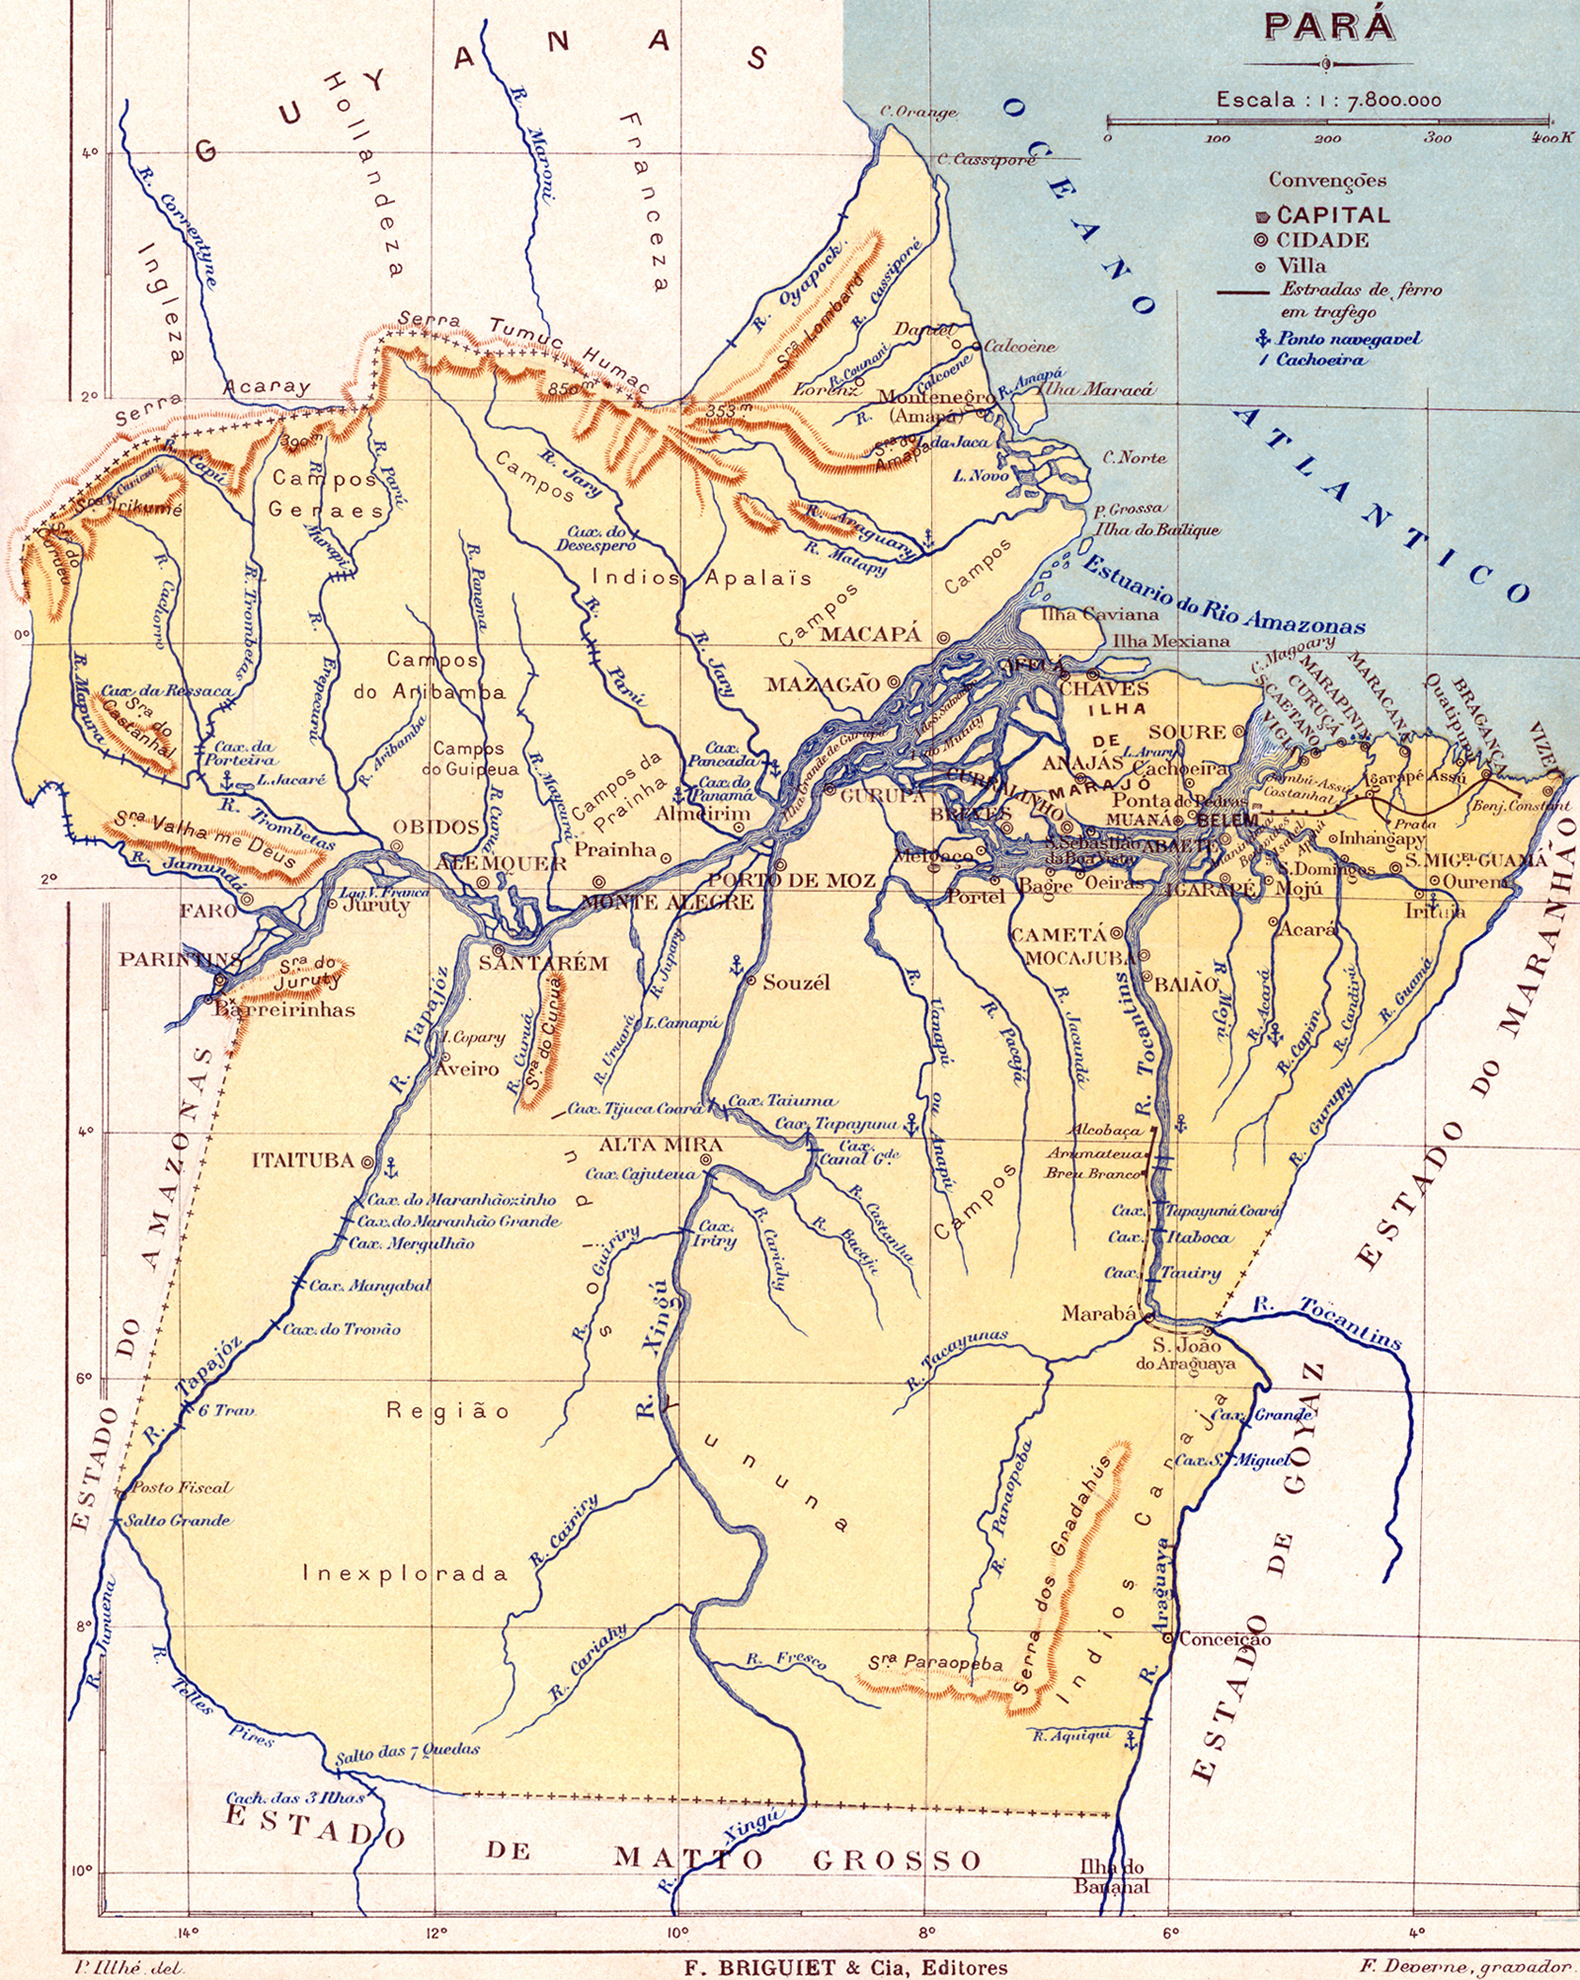 Pará mapa antigo